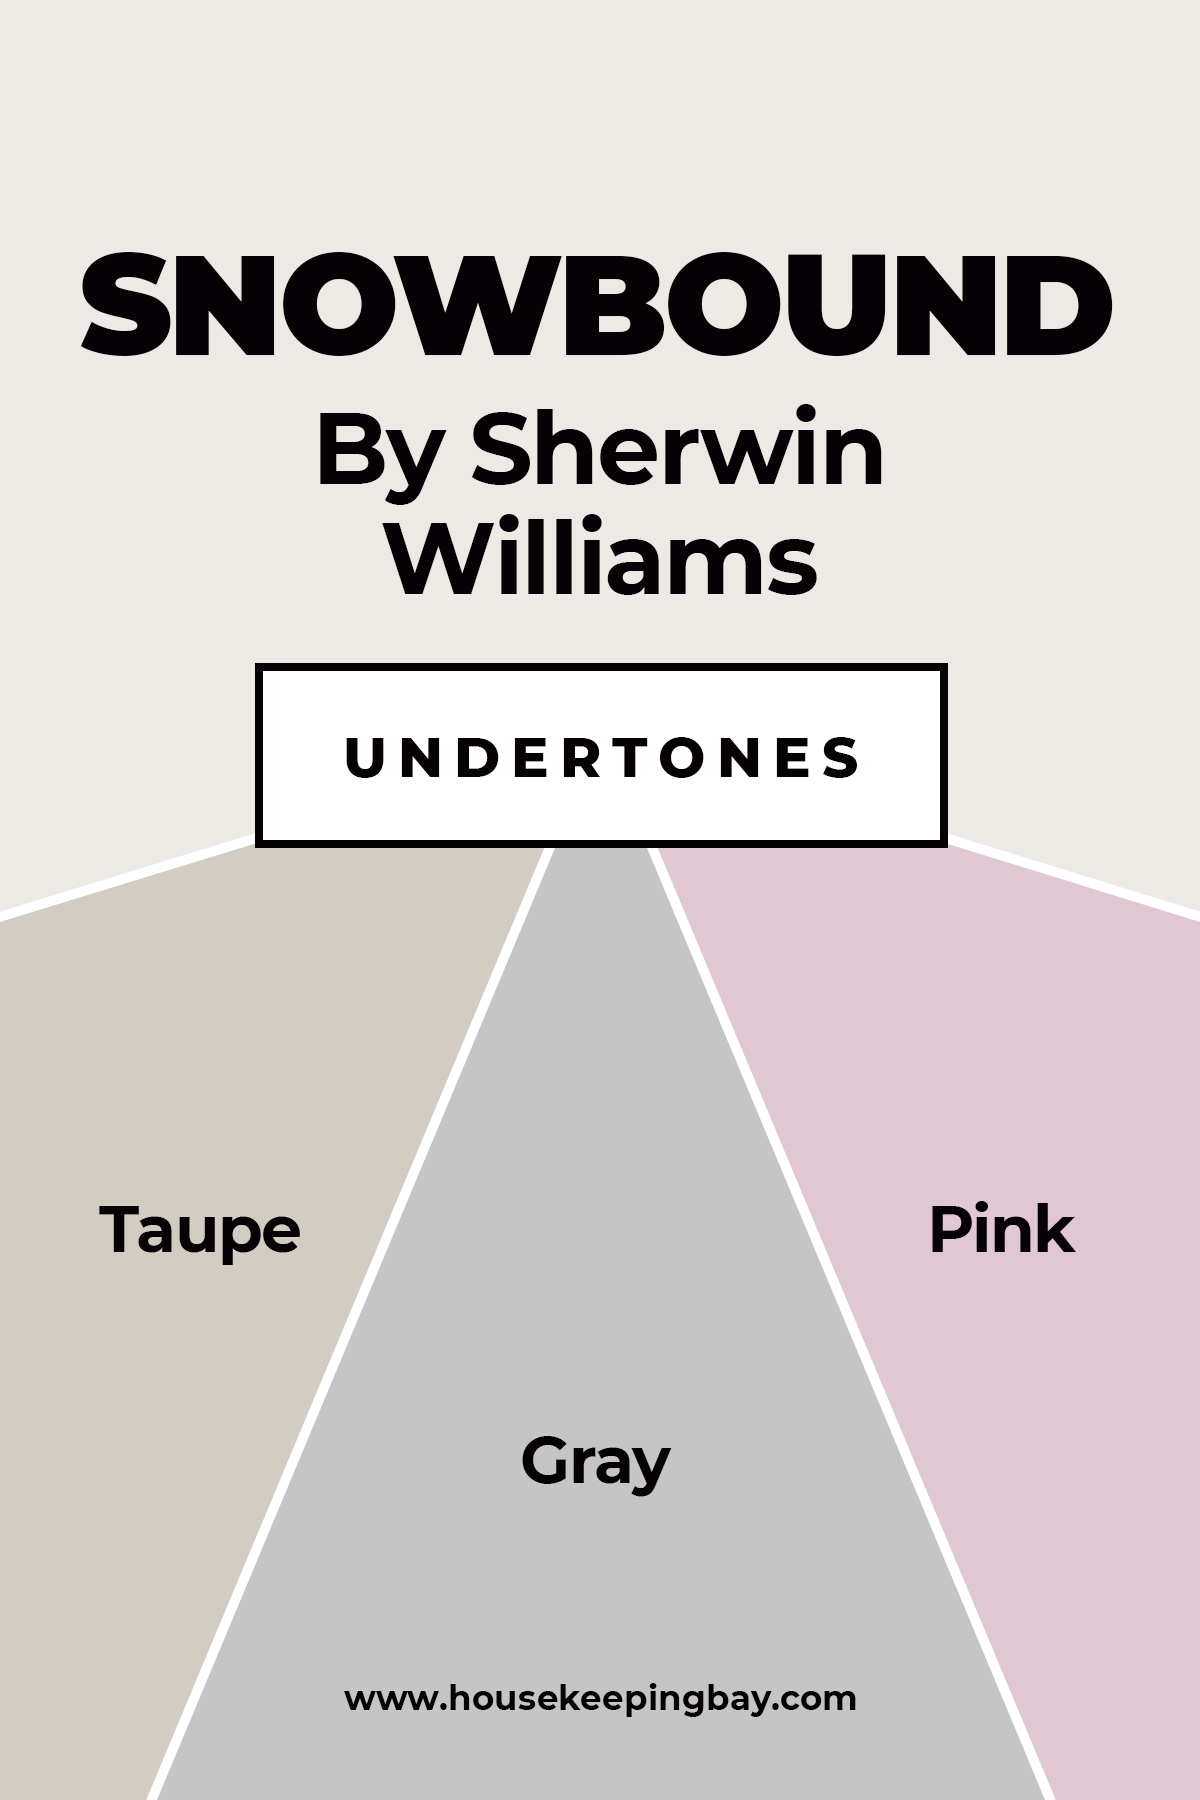 Sherwin Williams Snowbound Undertones